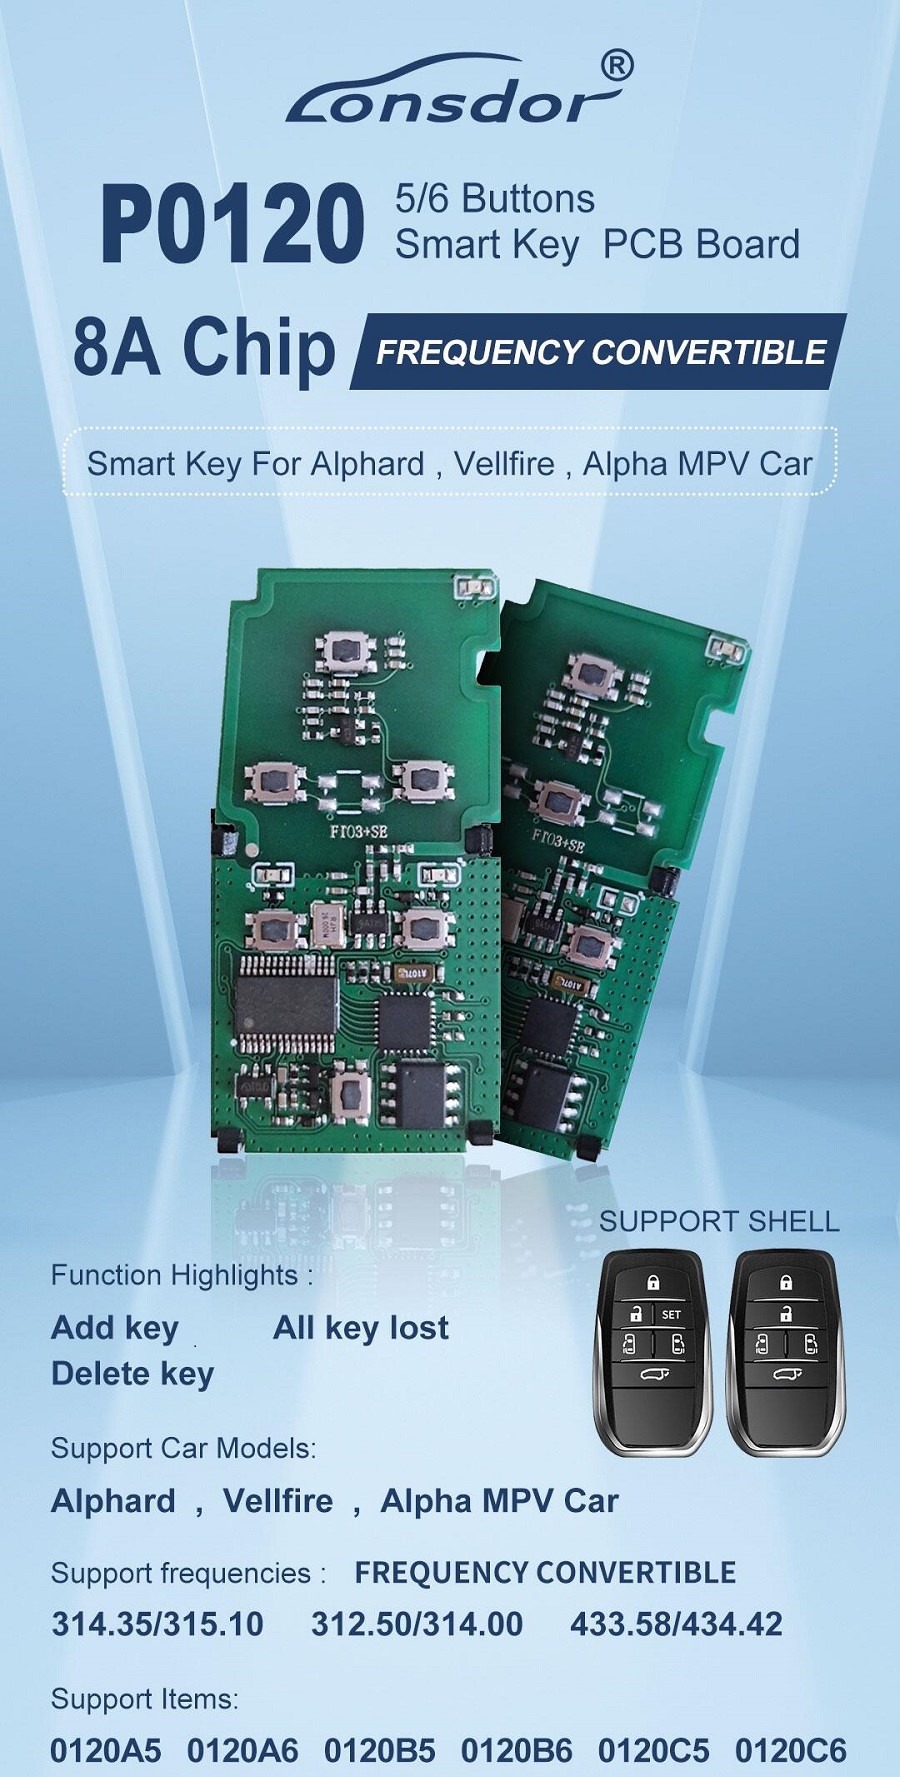 Lonsdor P0120 8A 6 Buttons Smart Key for Alphard, Vellfire, Alpha MVP